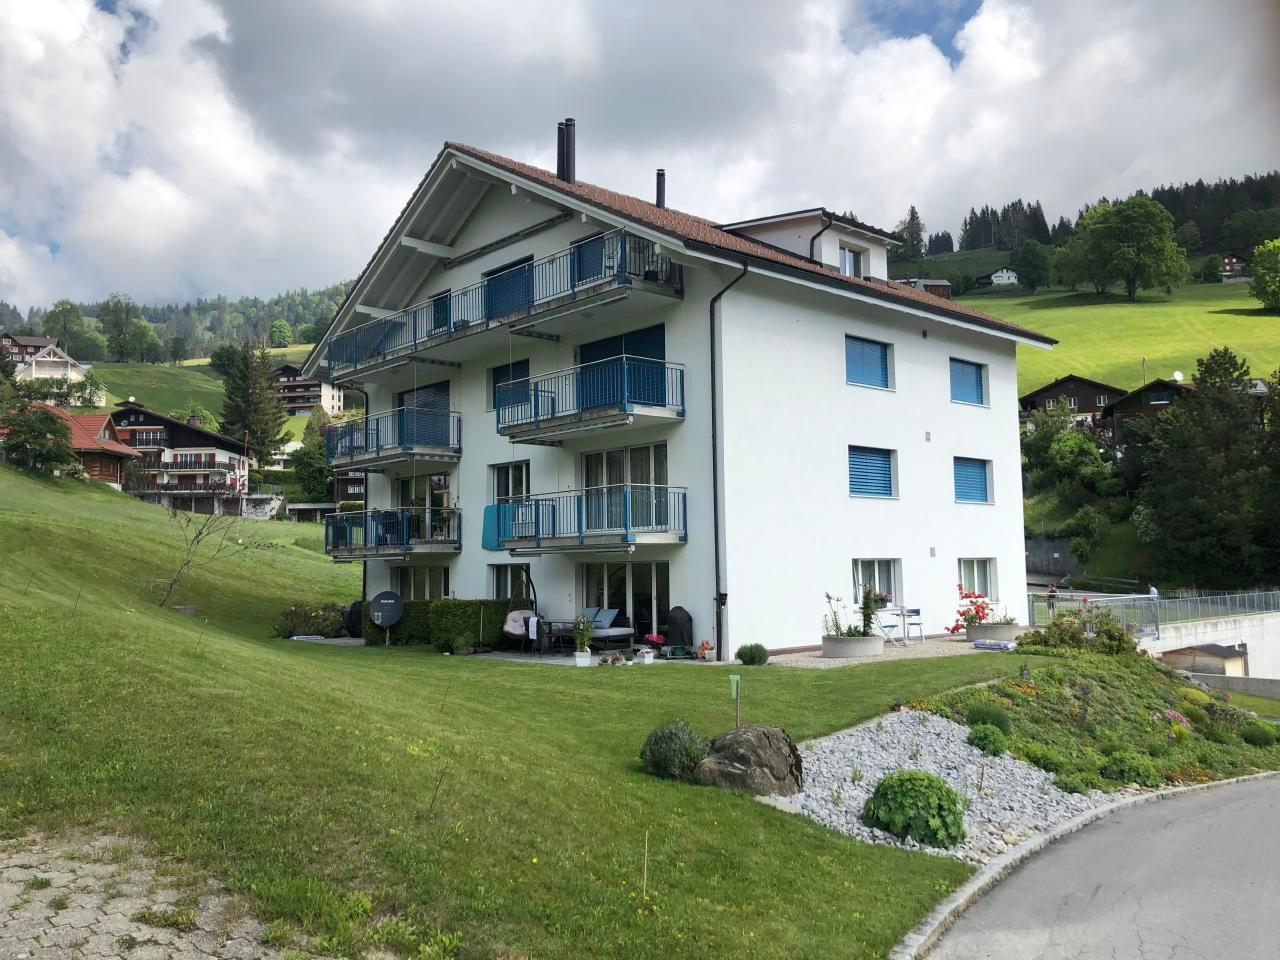 Erholung in Wildhaus mit Bergsicht Ferienwohnung in der Schweiz